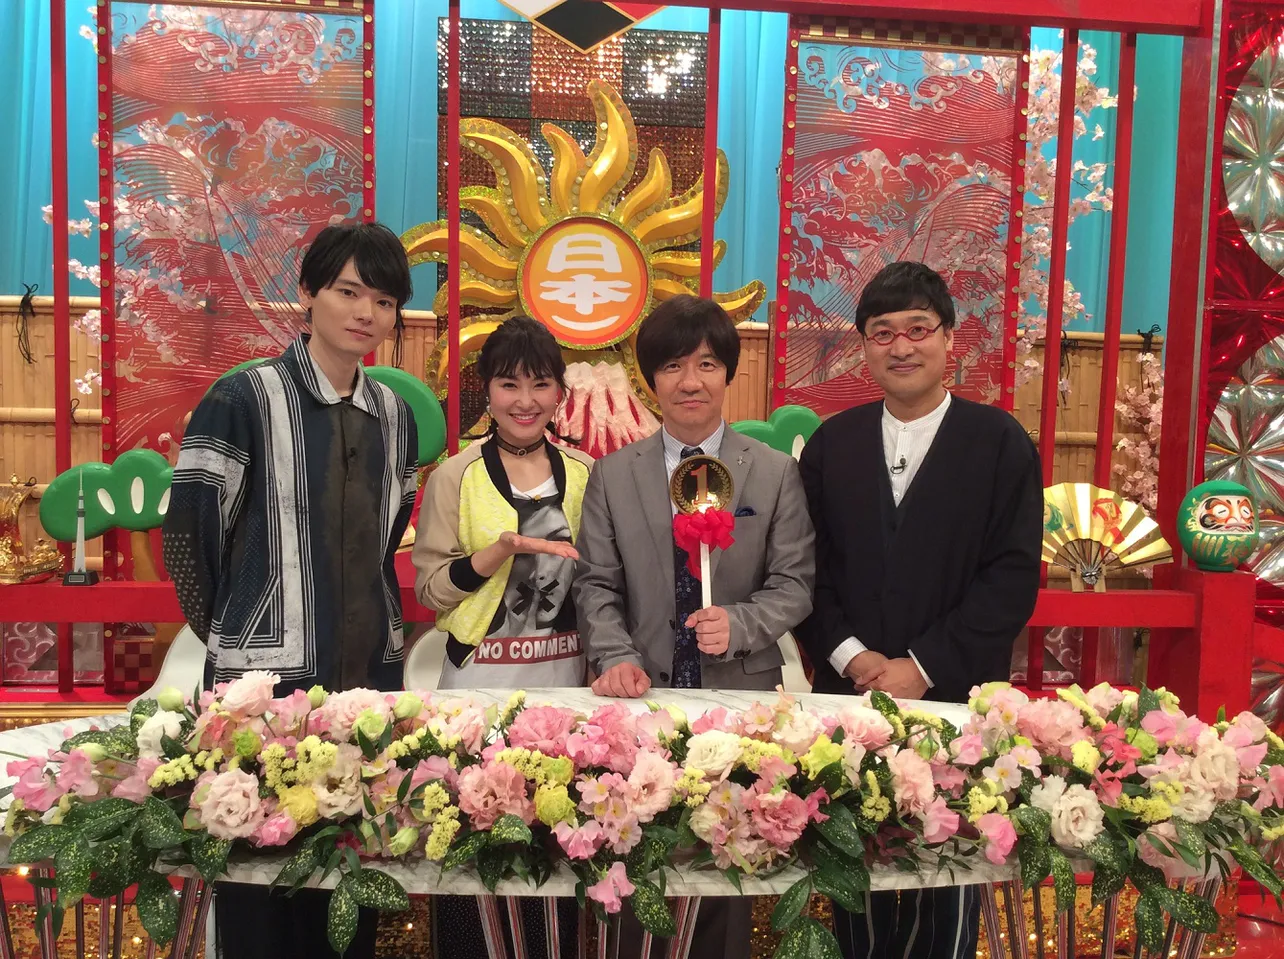 「日本一ならできるかな!?」に出演する(左から)古川雄輝、村上佳菜子、内村光良、山里亮太